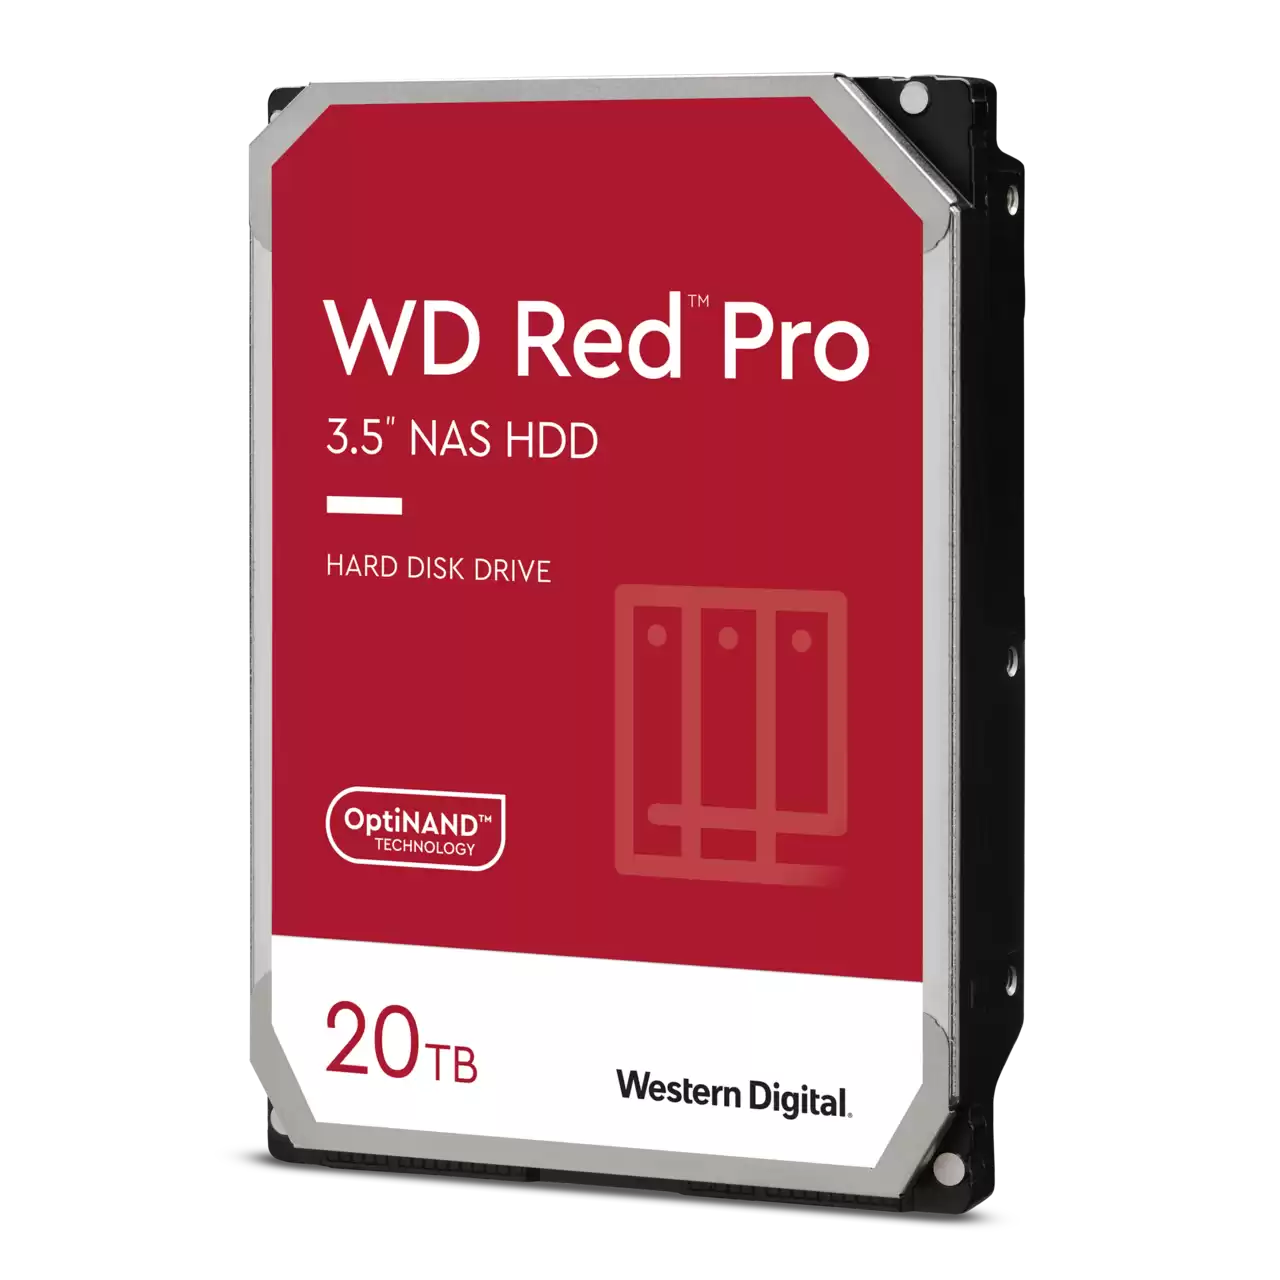 Beliggenhed hvile Kritisere WD Red Pro 10TB NAS Hard Drive - Walmart.com